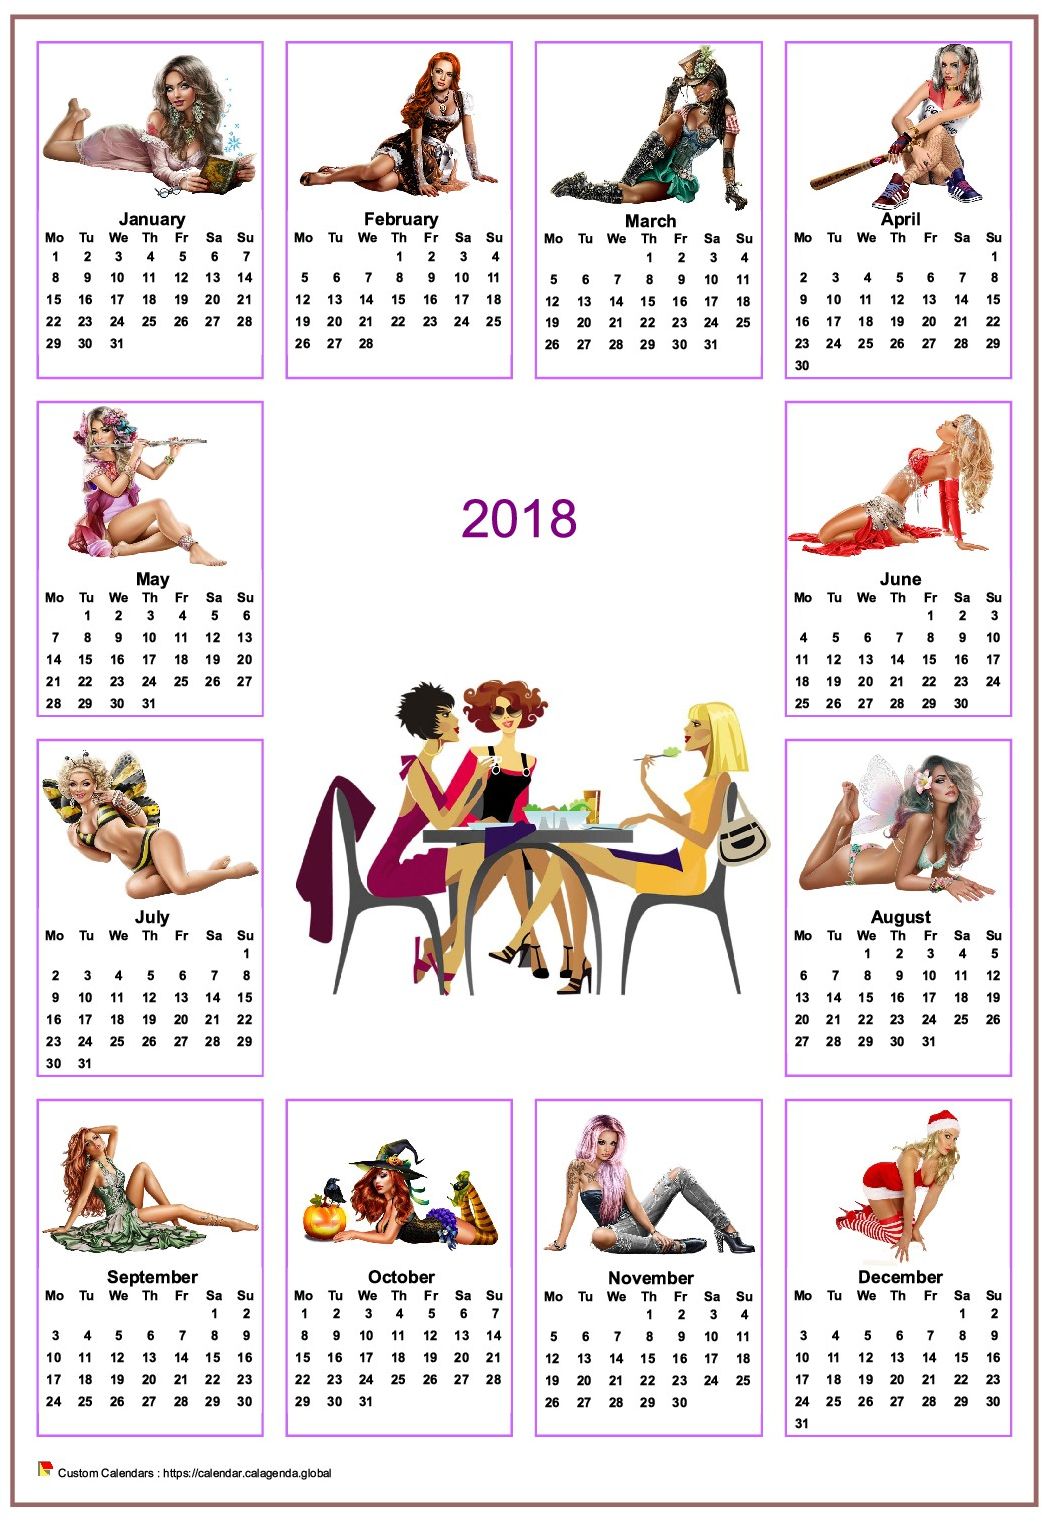  2018 annual calendar tubes women